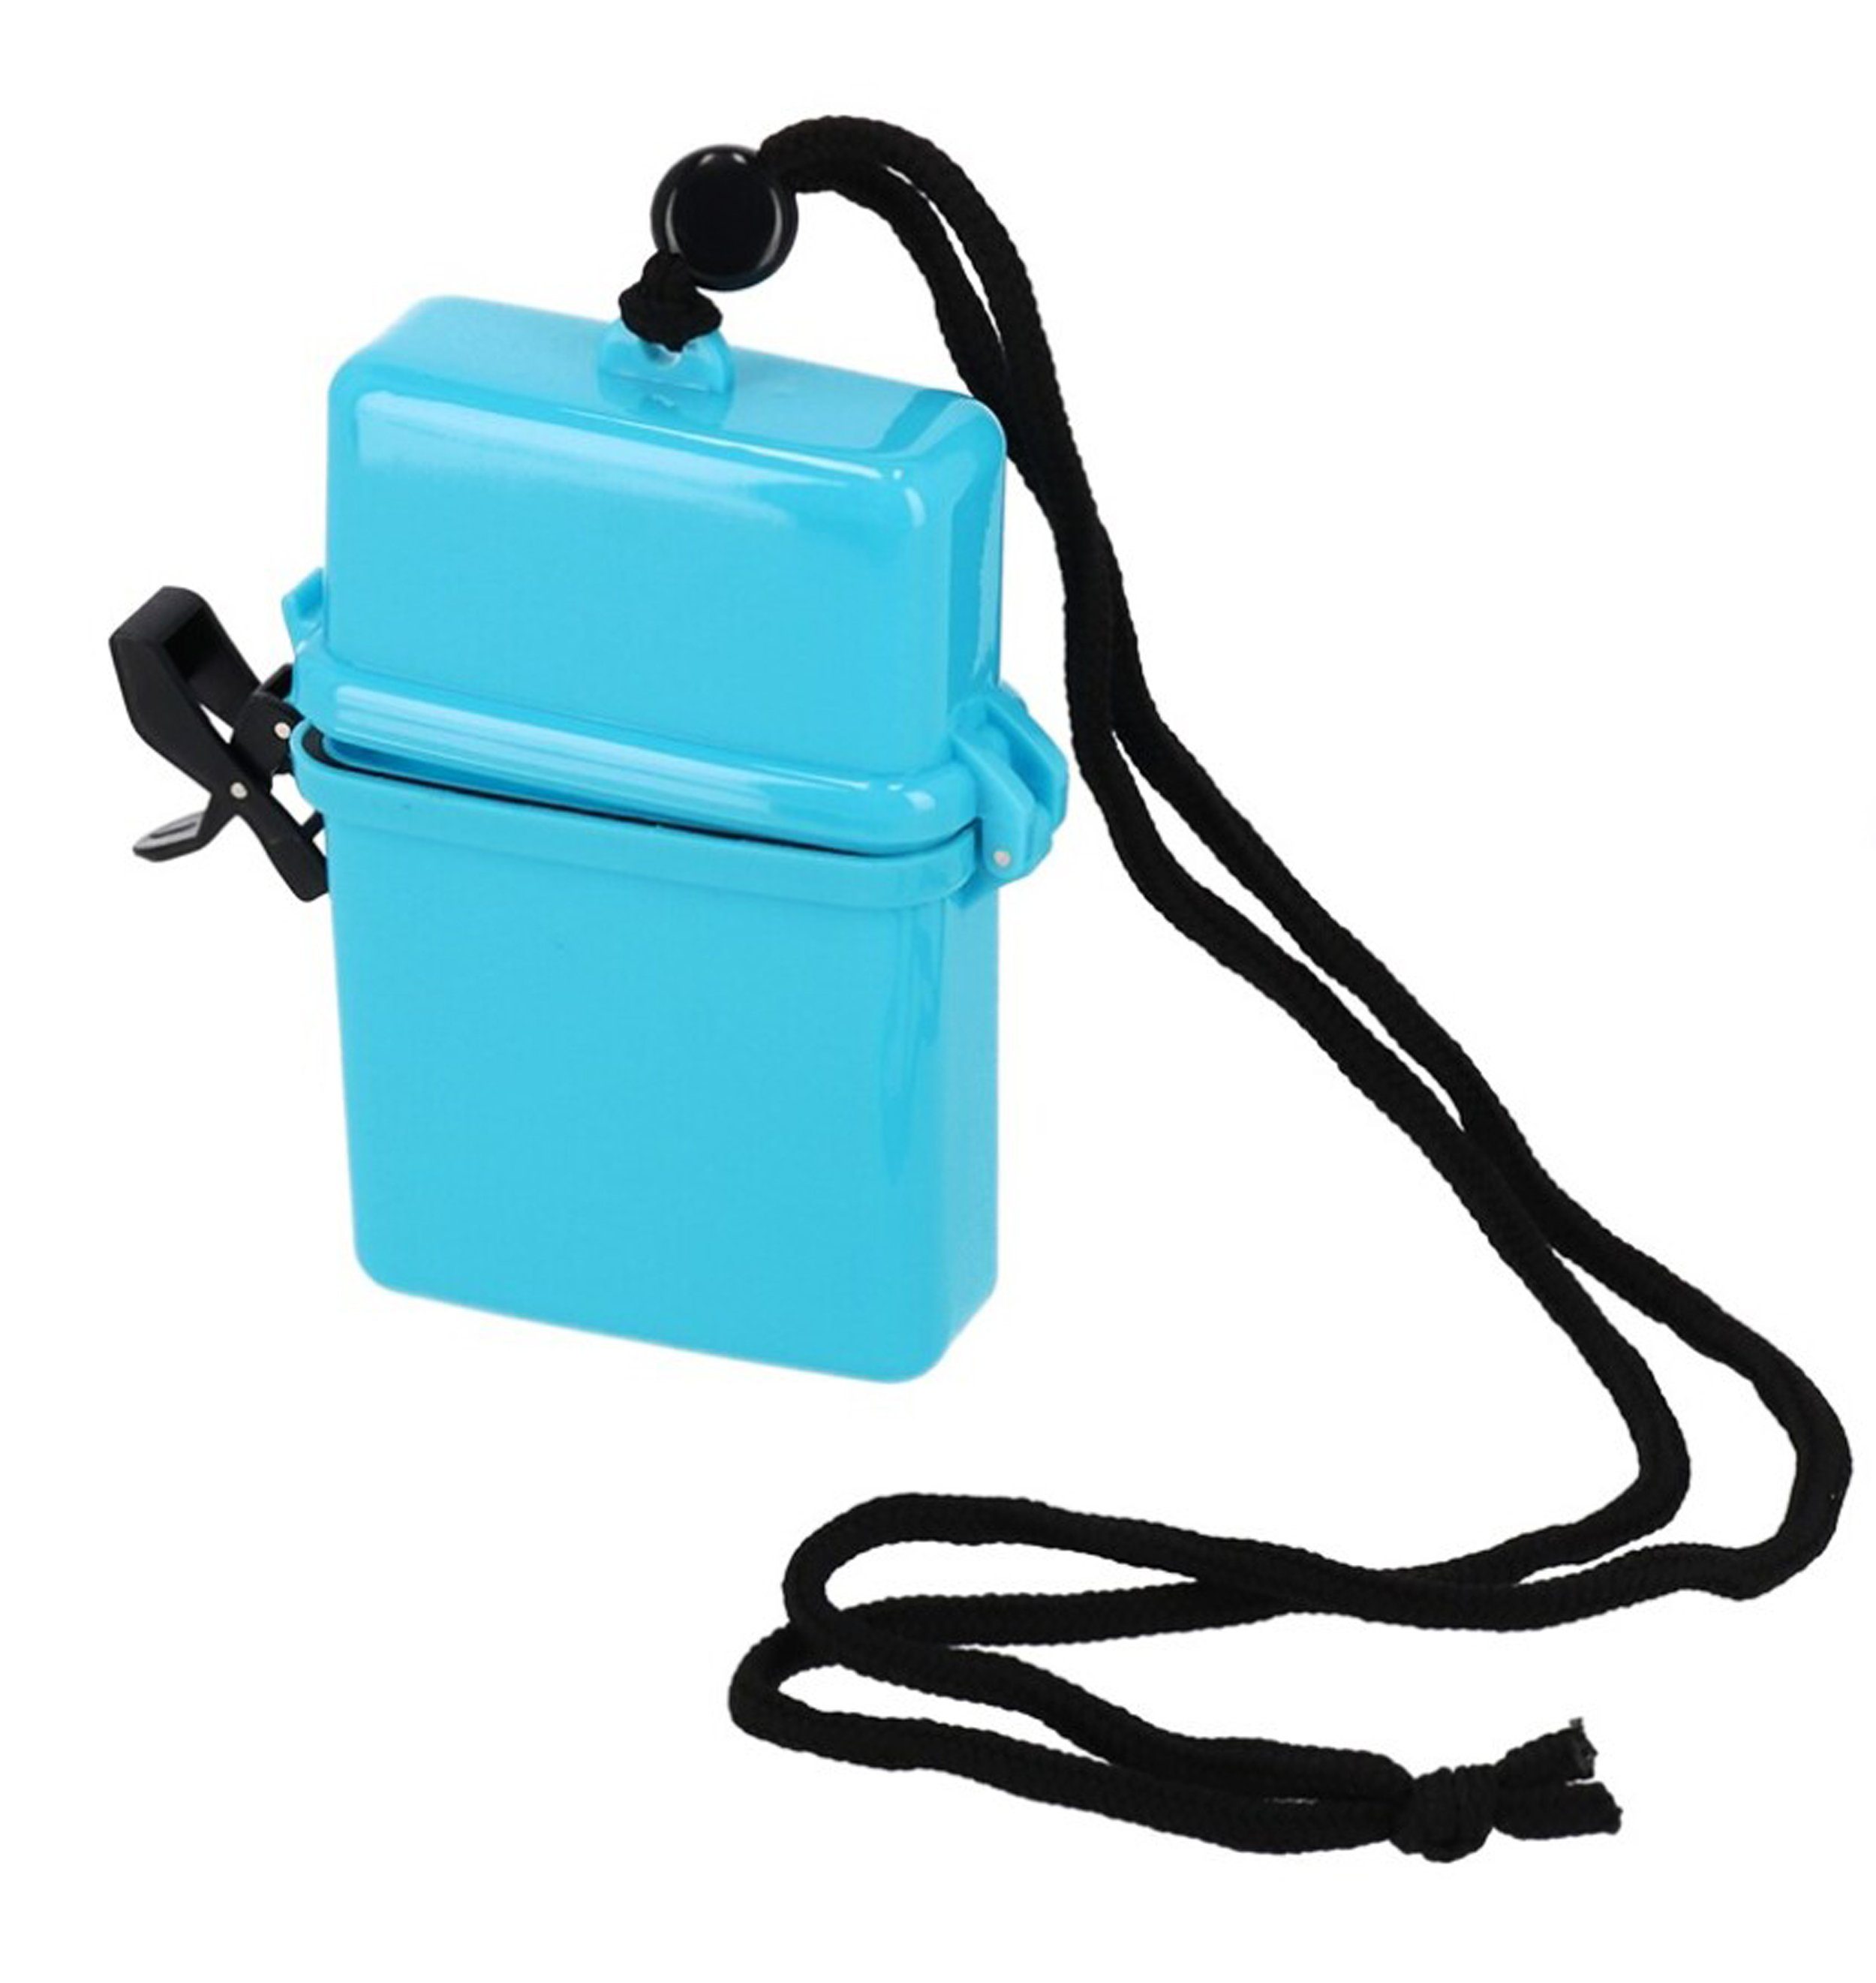 Aufbewahrungsbox WASSERDICHTE BOX 12x9,5x3,5cm Kunststoff Nackenband Blau  56 (Blau), Kunststoffbox Behälter Outdoor wasserdicht